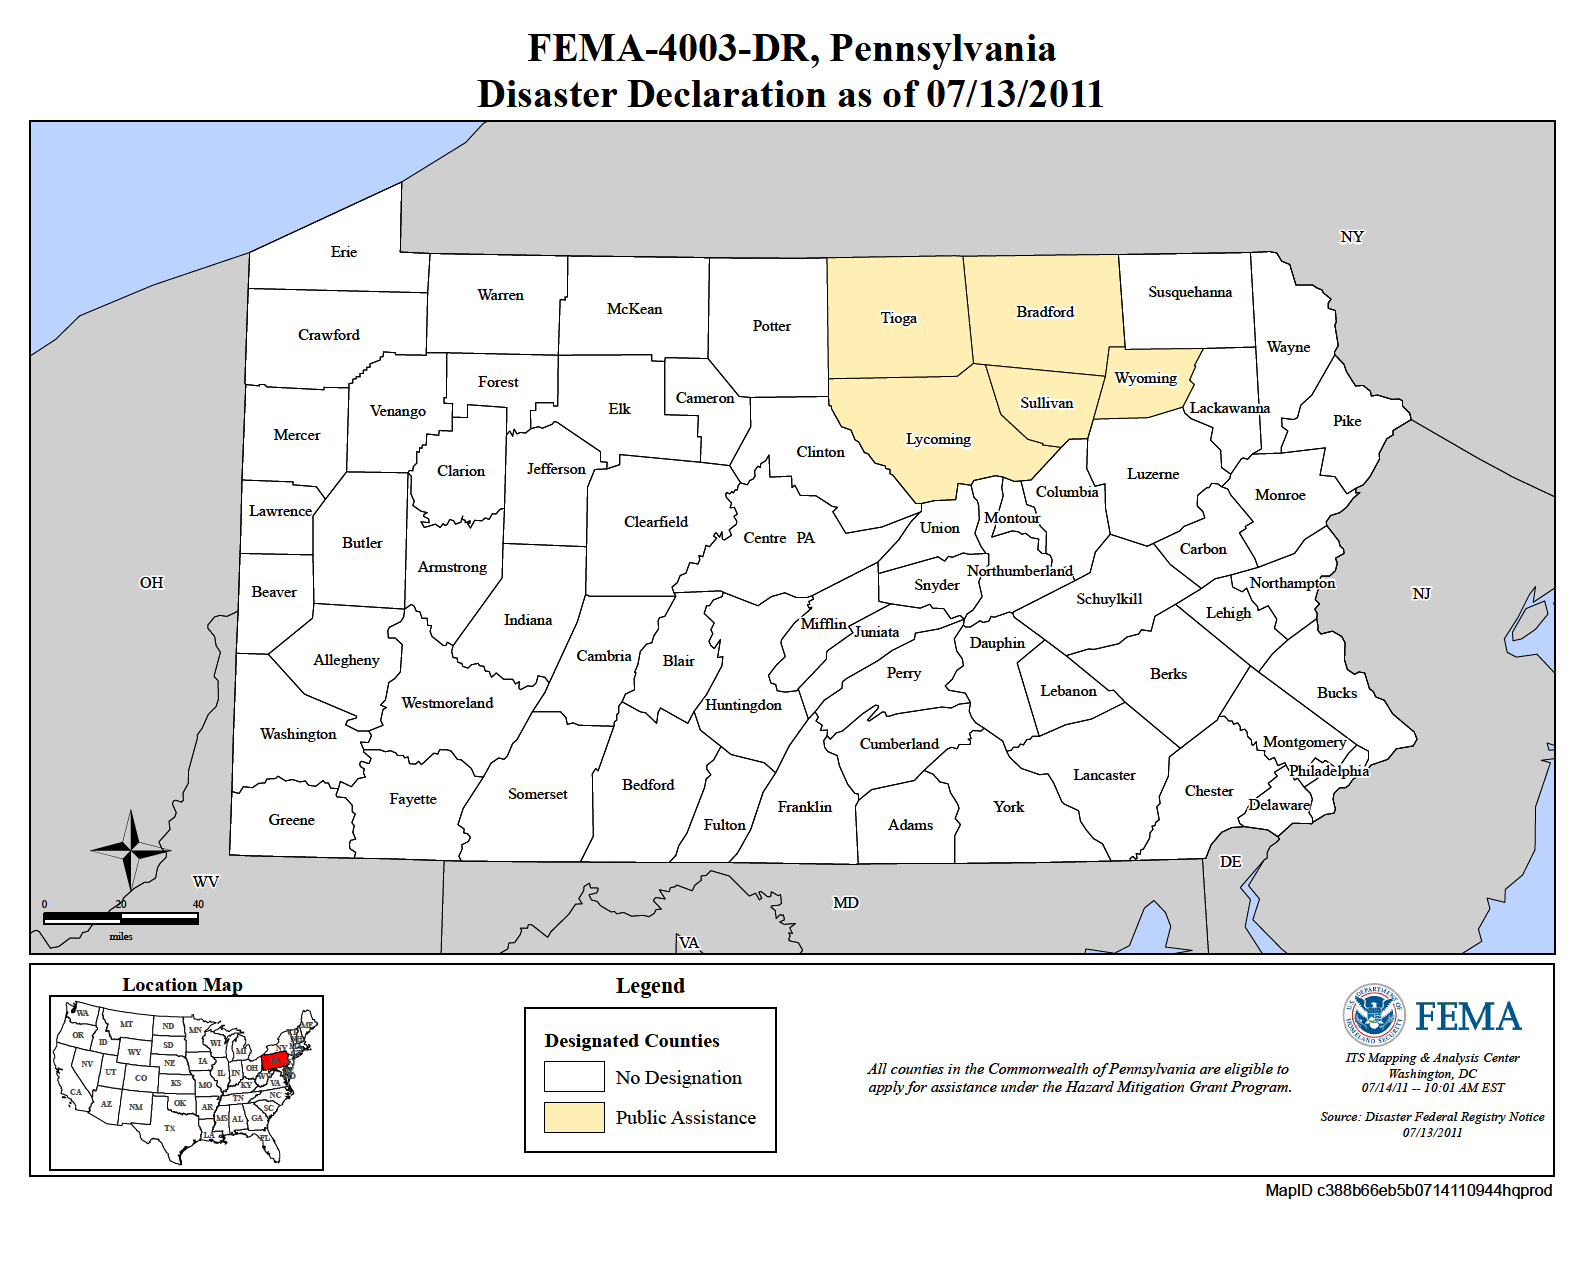 Pennsylvania Severe Storms and Flooding (DR4003) FEMA.gov